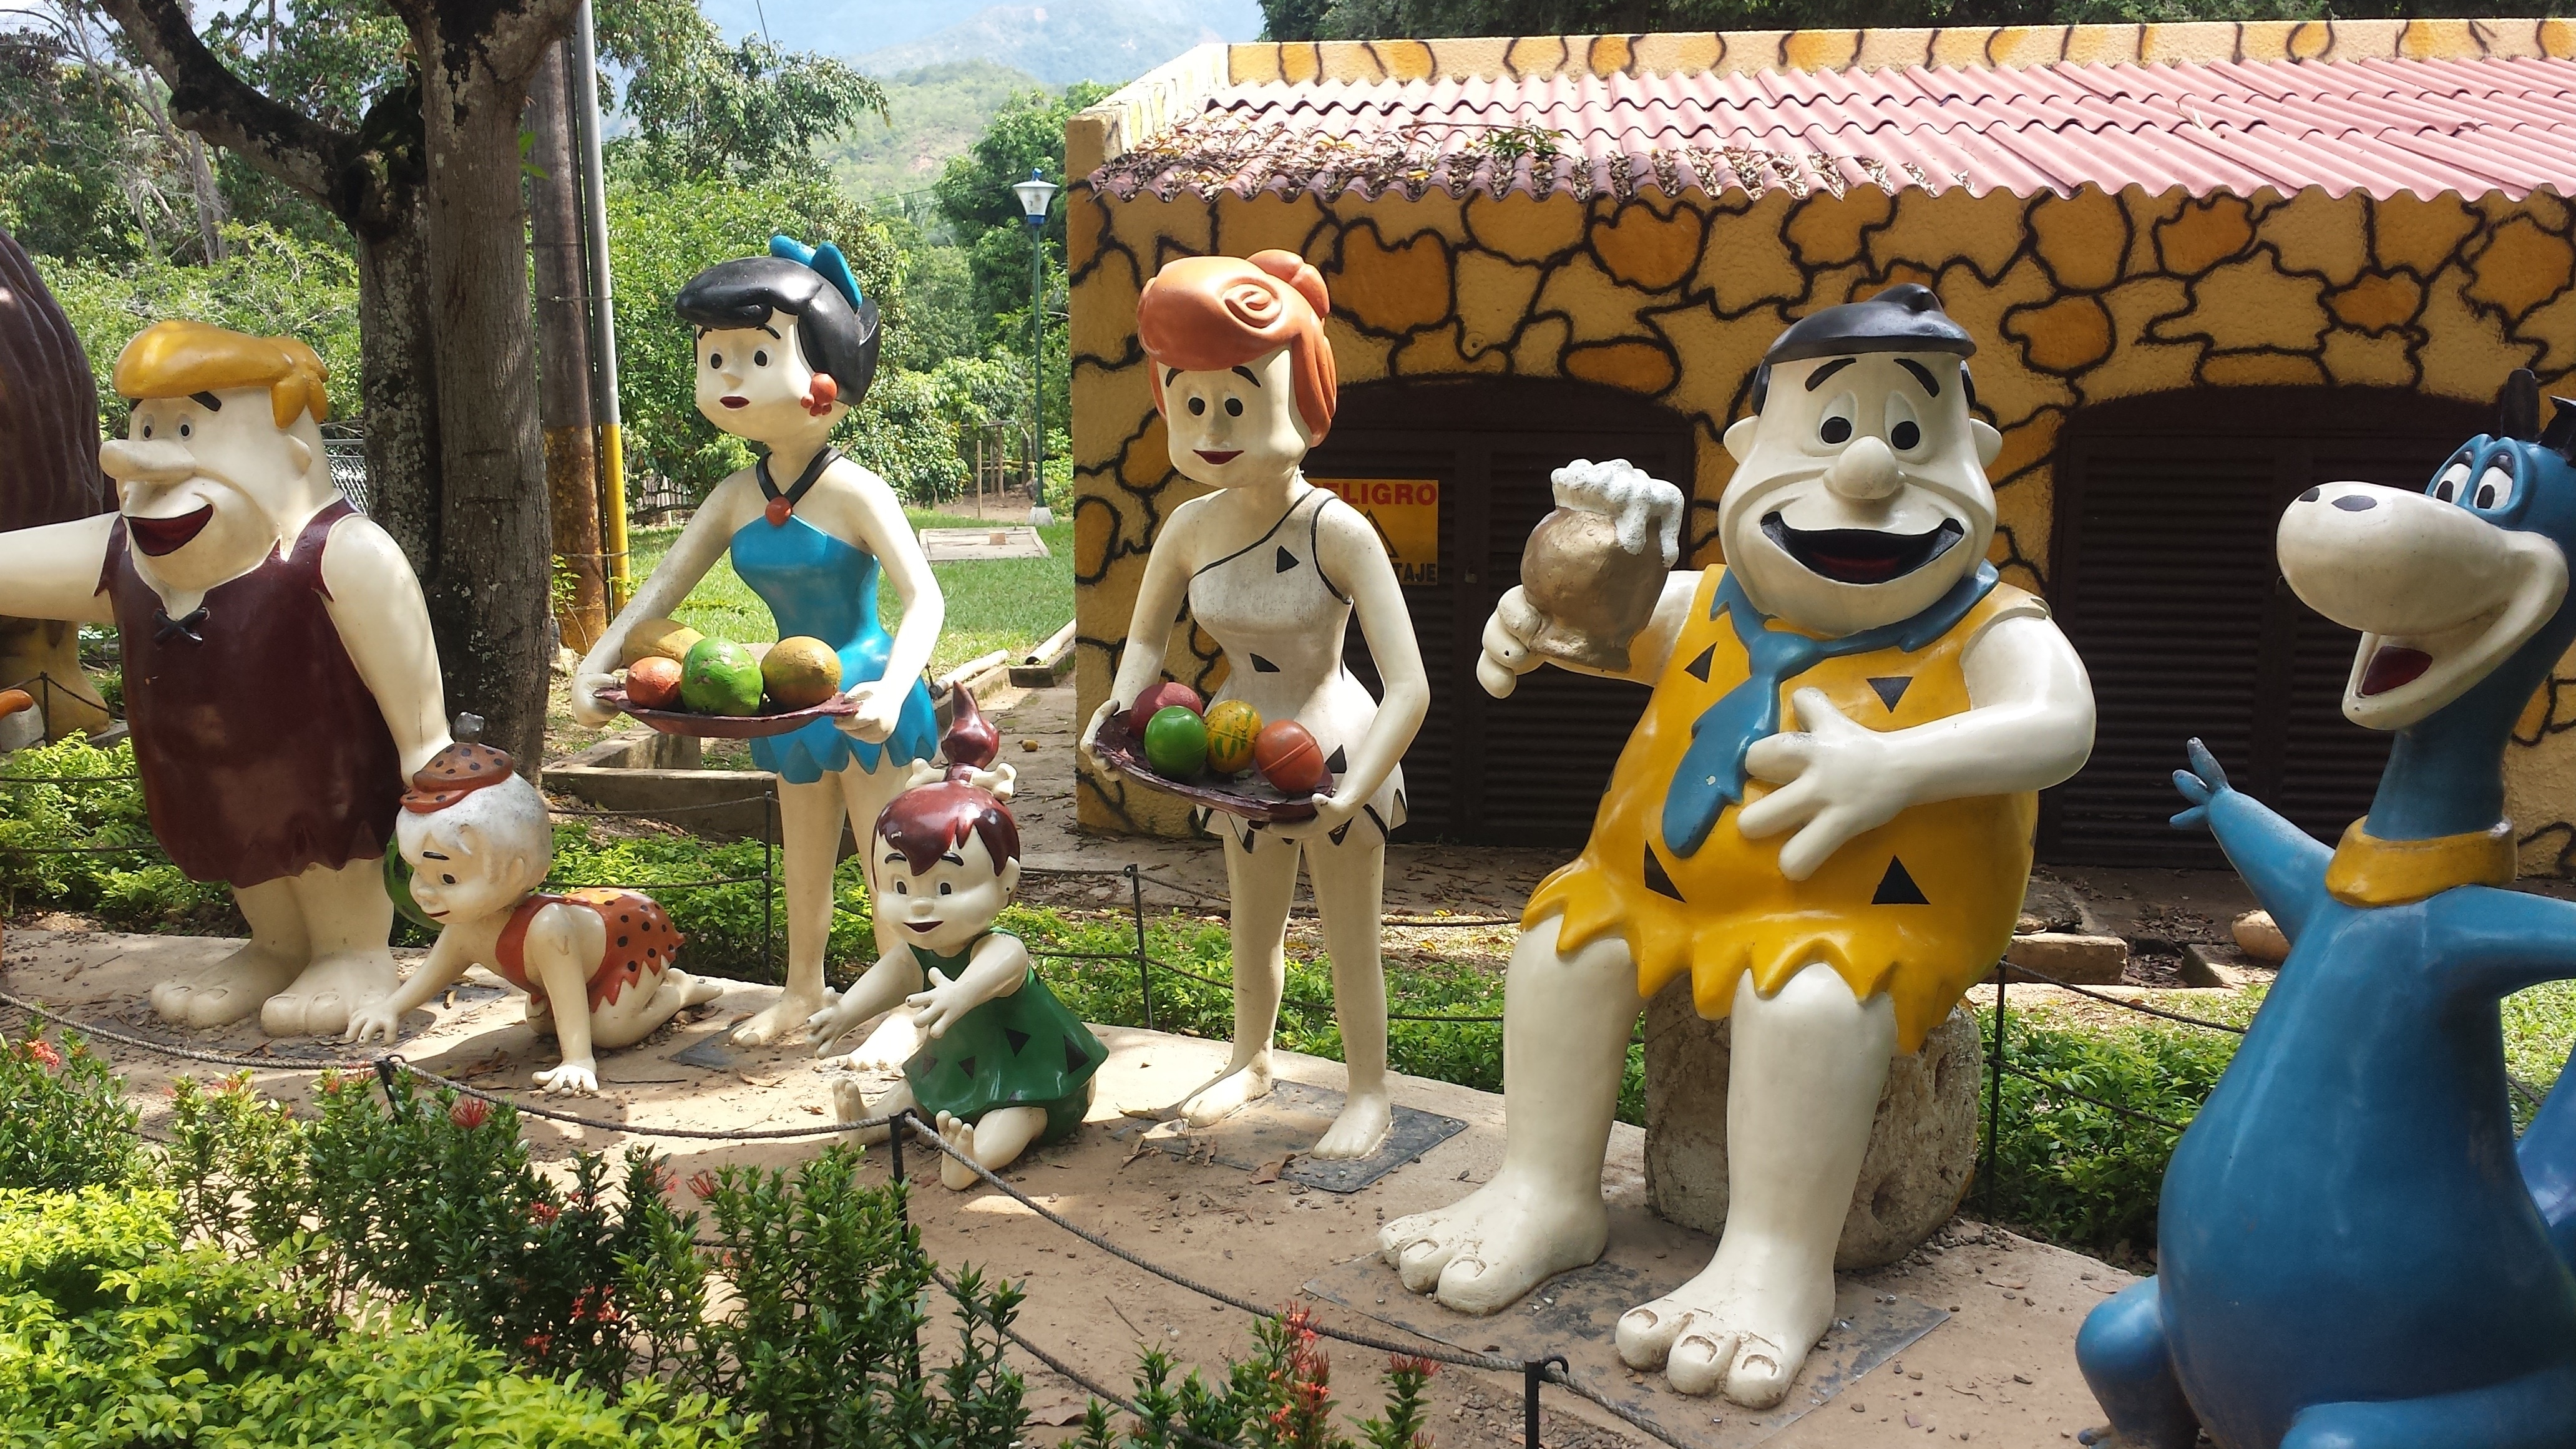 The Flintstones Ceramic Figures - The Flintstones , HD Wallpaper & Backgrounds